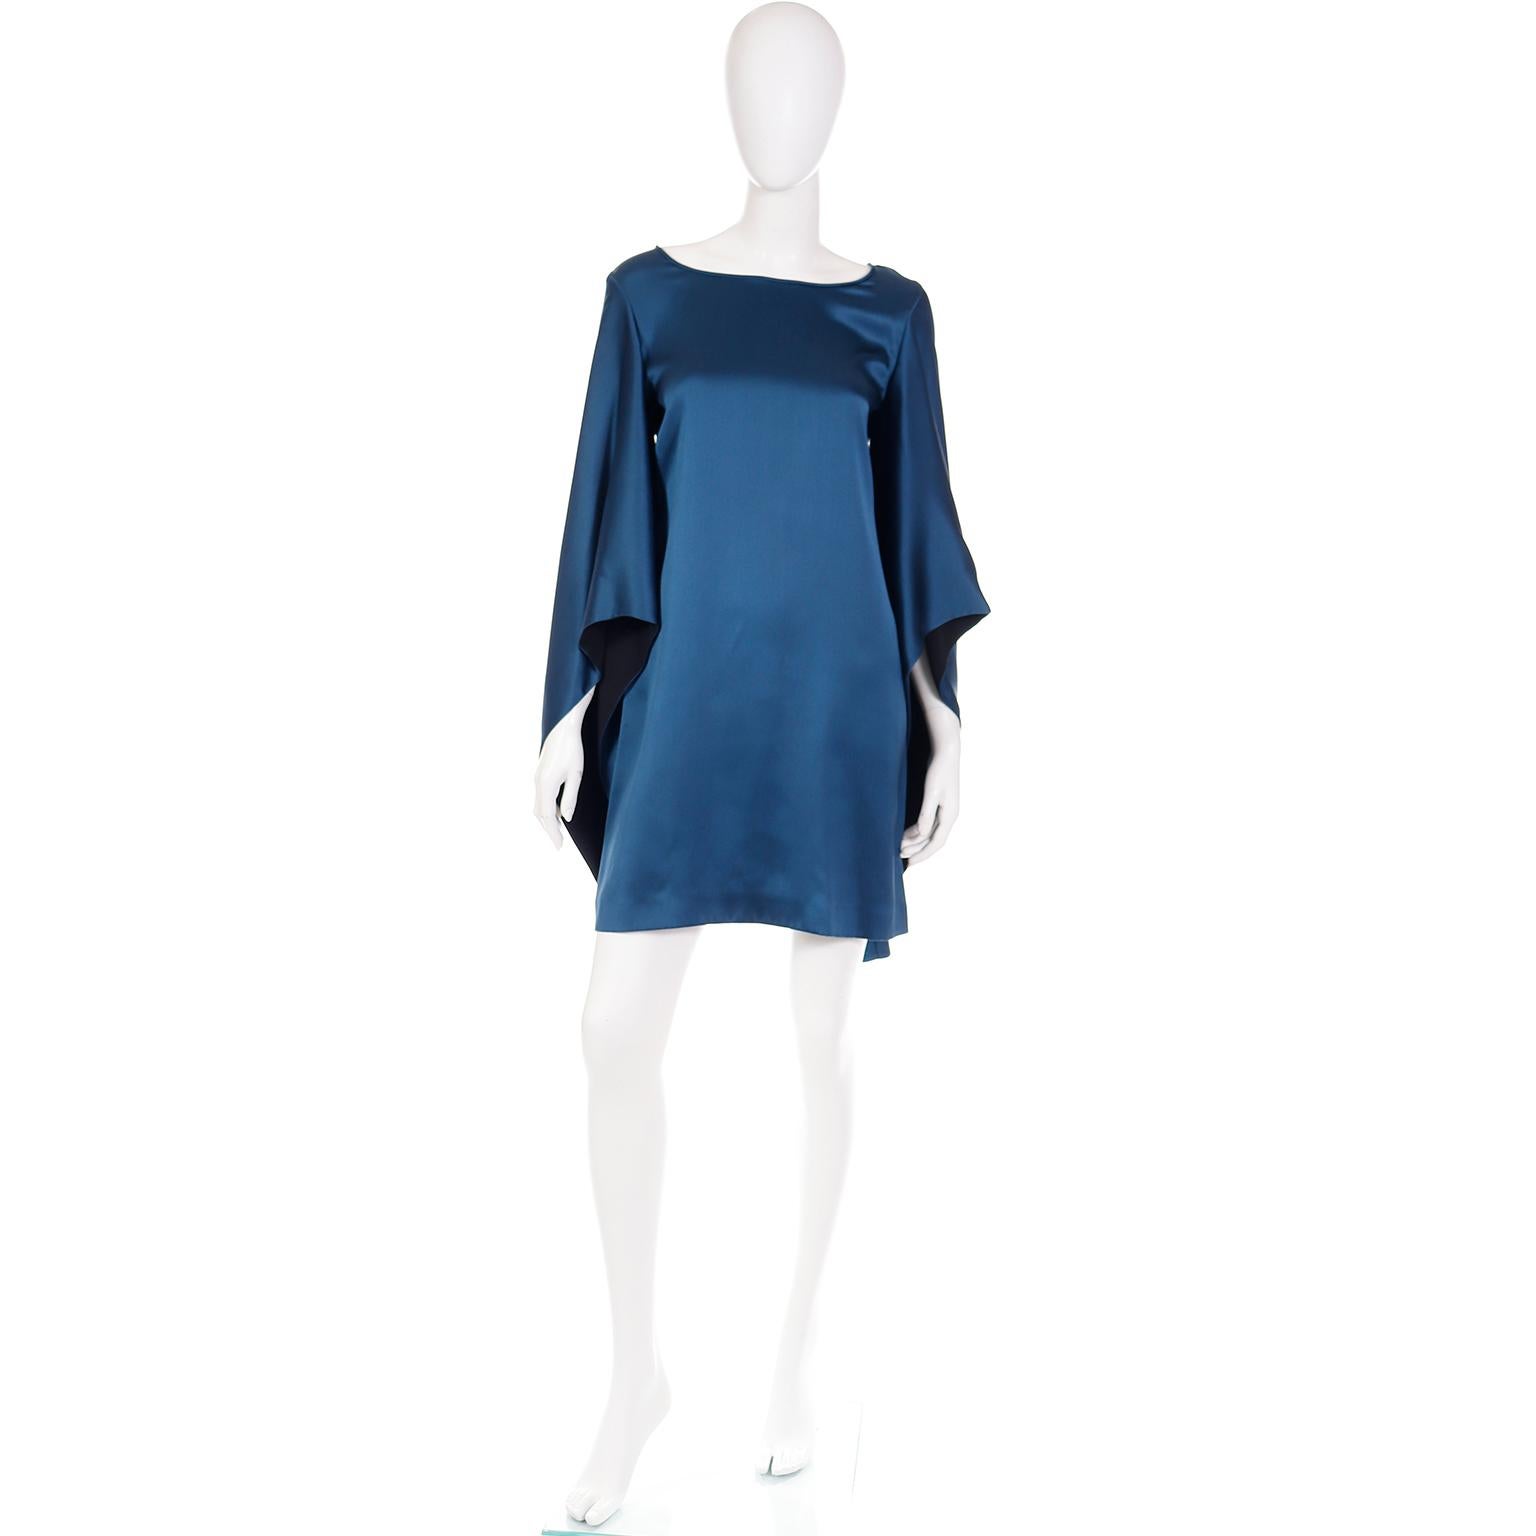 Voici une très jolie robe vintage Yves Saint Laurent Stefano Pilati des années 2000, bleu lapis foncé, avec de longues manches exagérées de style pagode. Les manches sont dotées d'une doublure noire qui se voit juste assez pour créer un beau